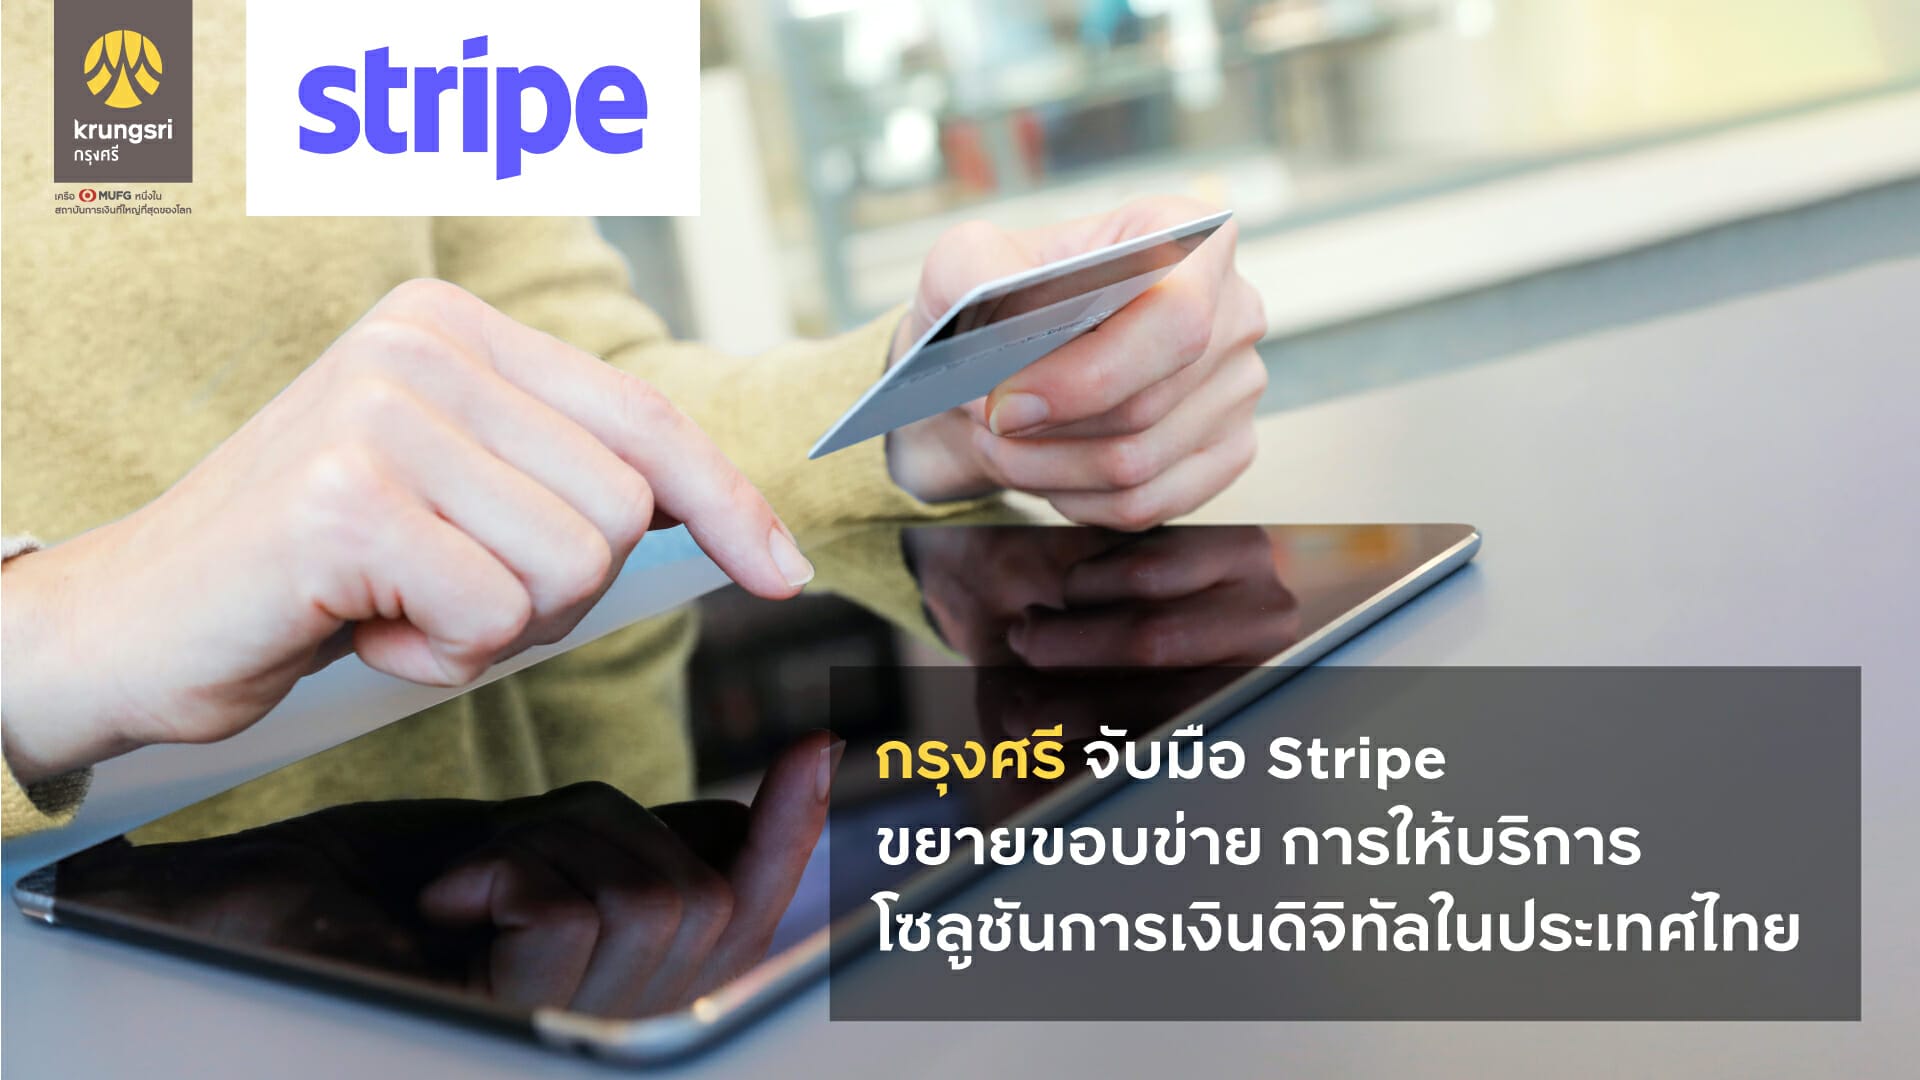 กรุงศรี จับมือ Stripe ขยายขอบข่ายการให้บริการเงินดิจิทัลในประเทศไทย